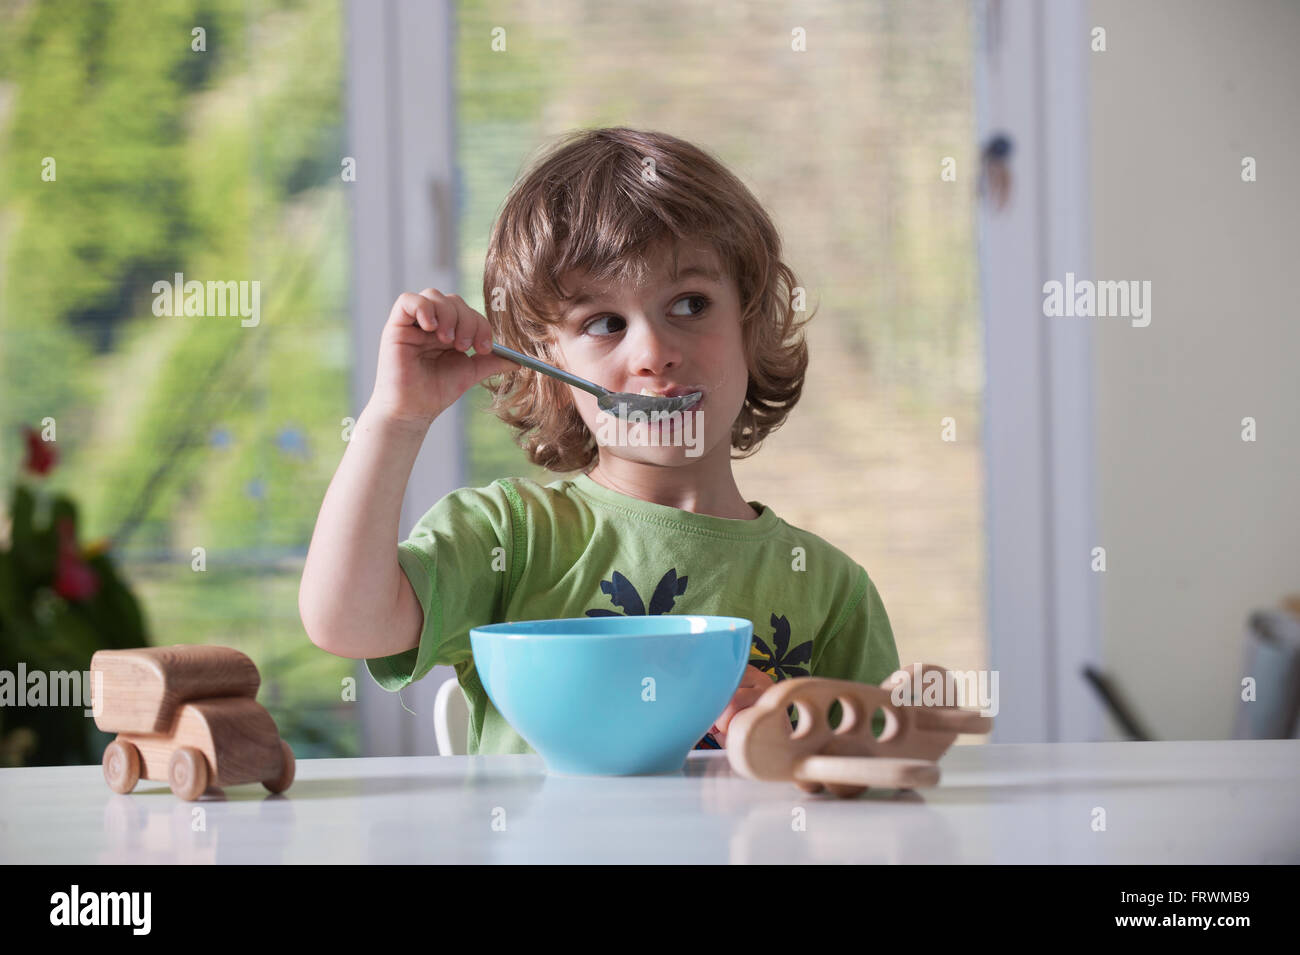 Cute little boy comiendo su comida mientras juegan con juguetes Foto de stock